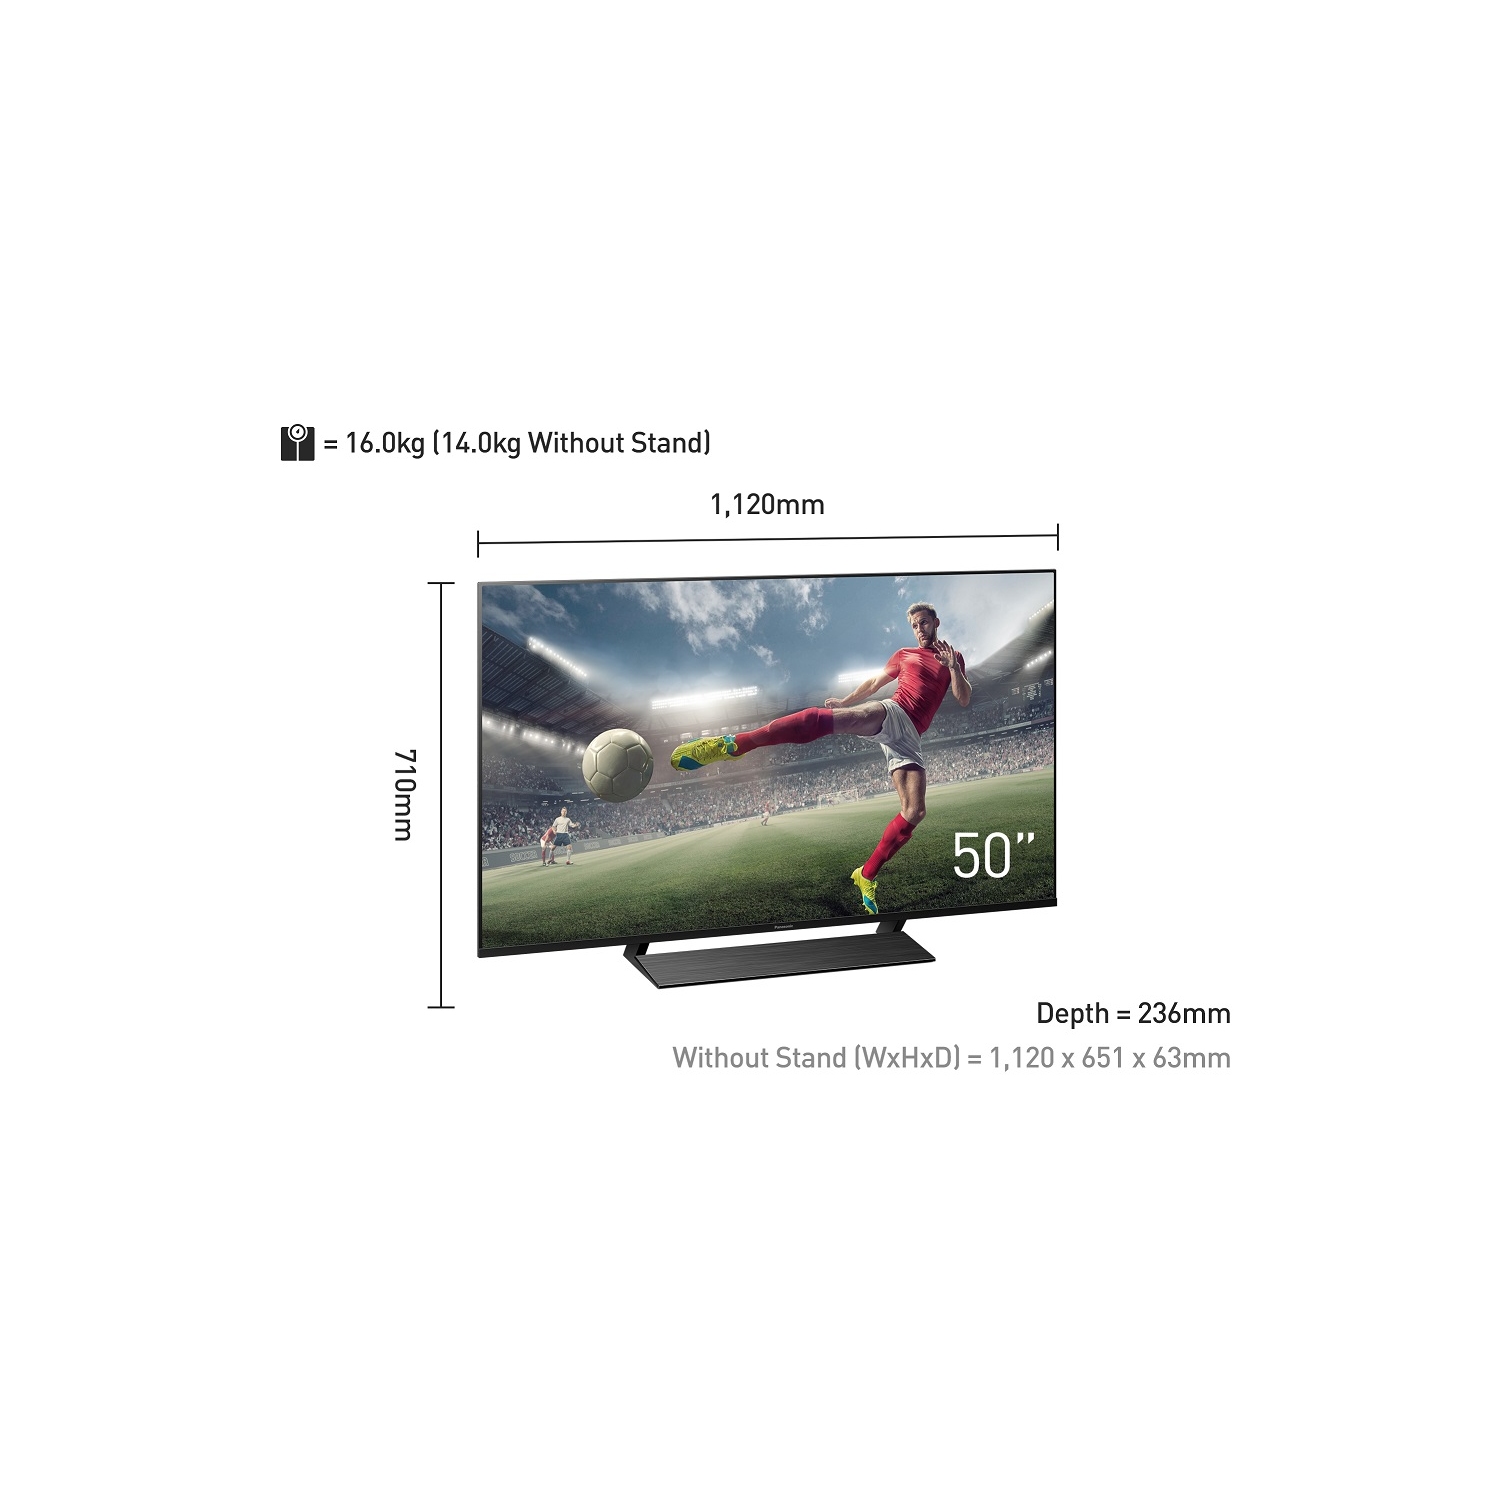 Panasonic 50" Premium 4K Ultra HD HDR LED Smart TV - 2